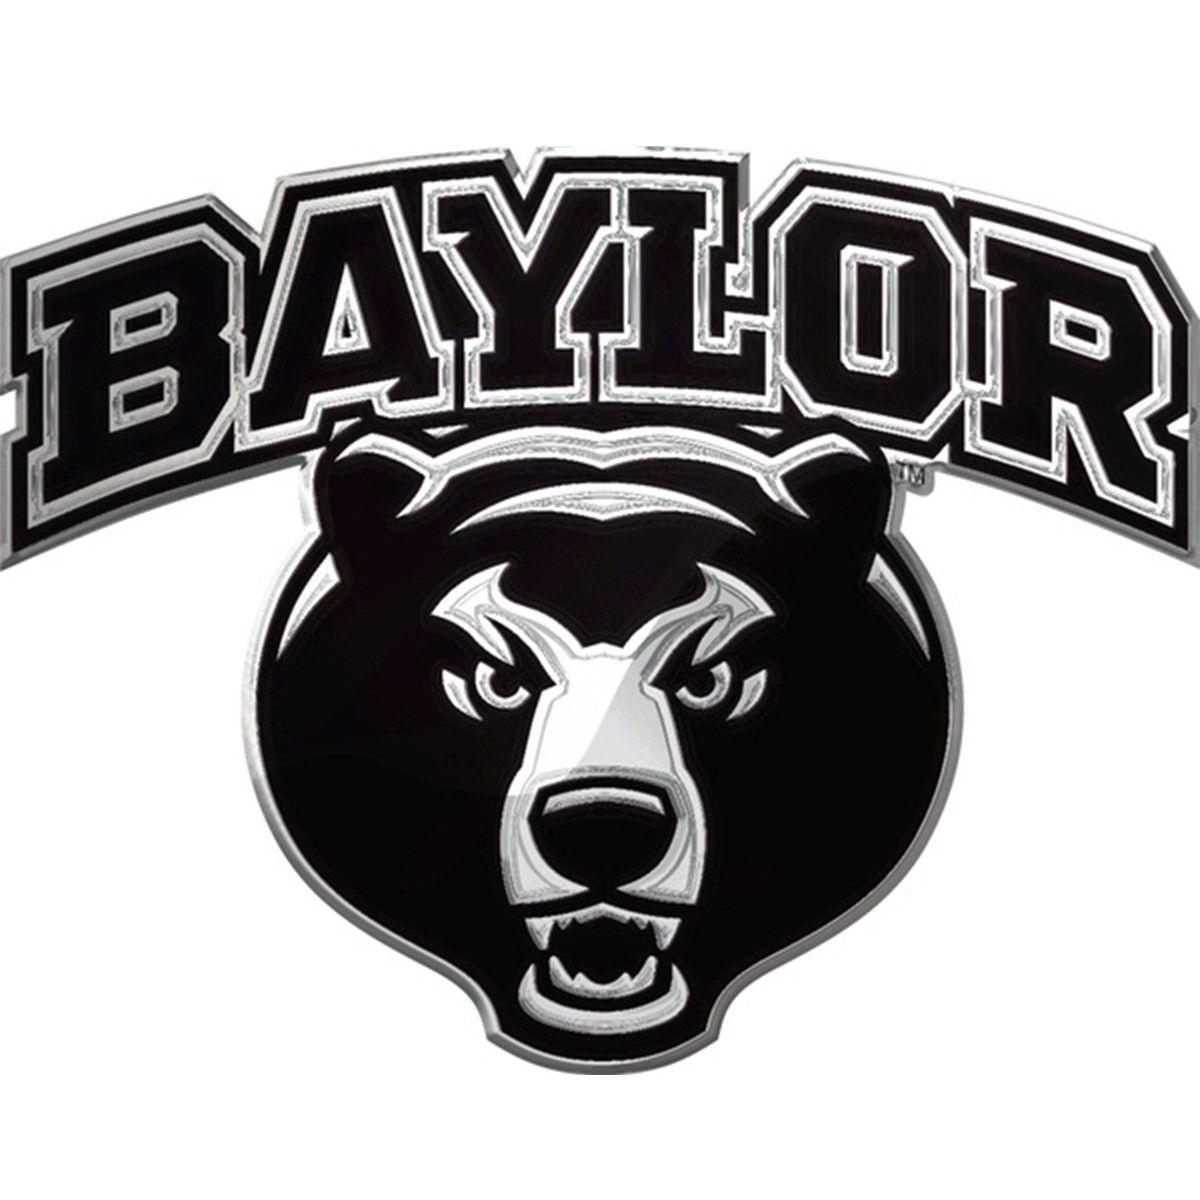 Automotive Team Logo - Baylor Bears Word-mark NCAA College Team Logo Auto Car